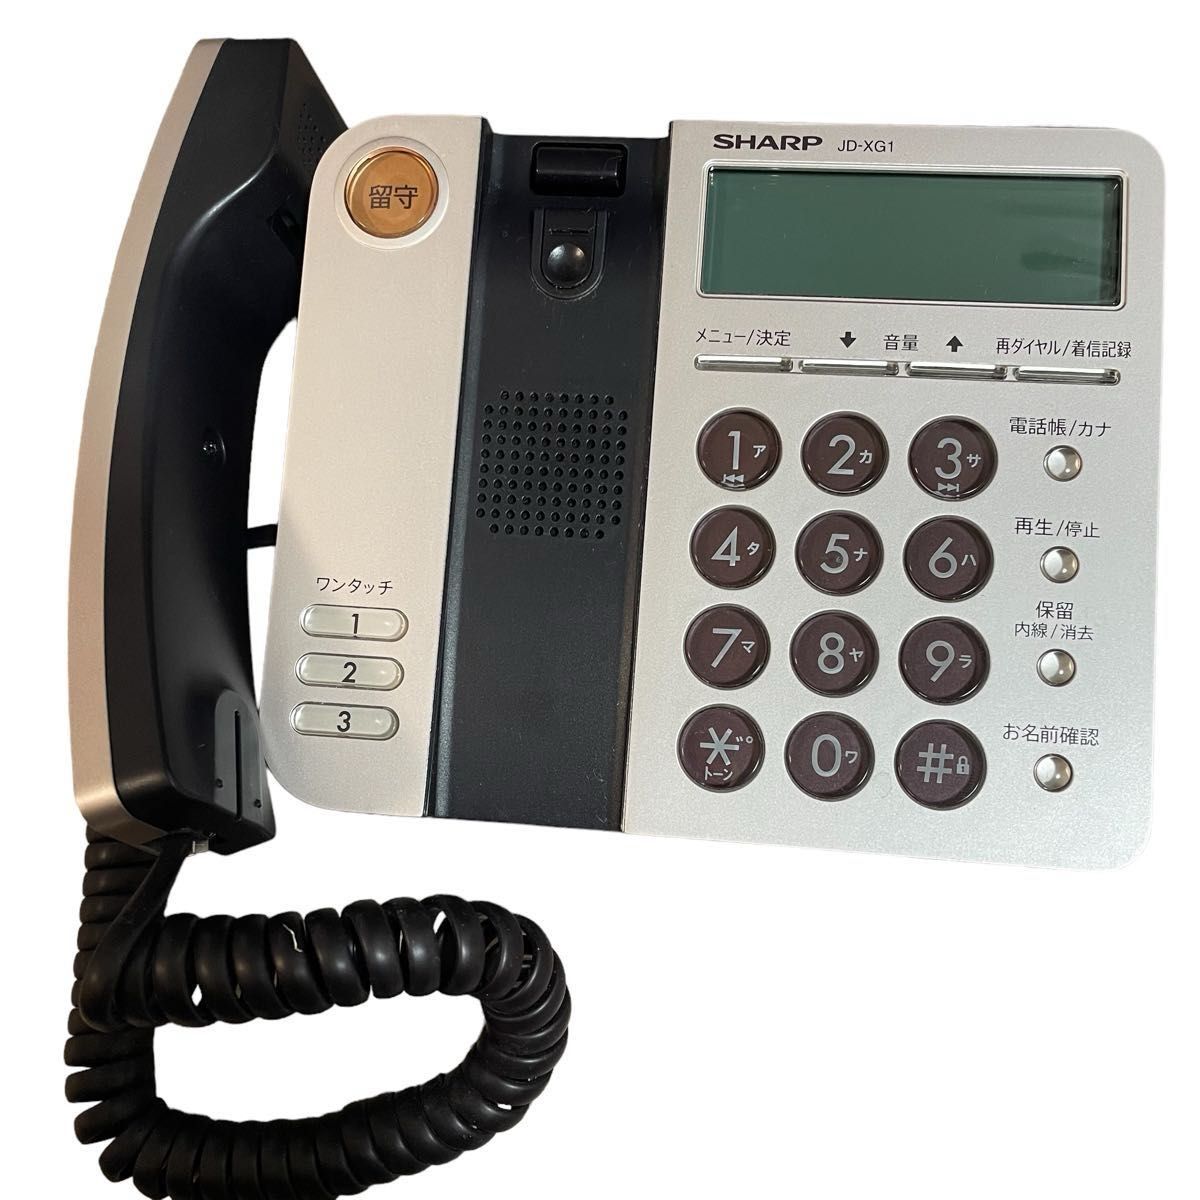 【美品】電話機 SHARP JD-XG1 子機1台付き シャープ ゴールド  デジタルコードレス電話機 